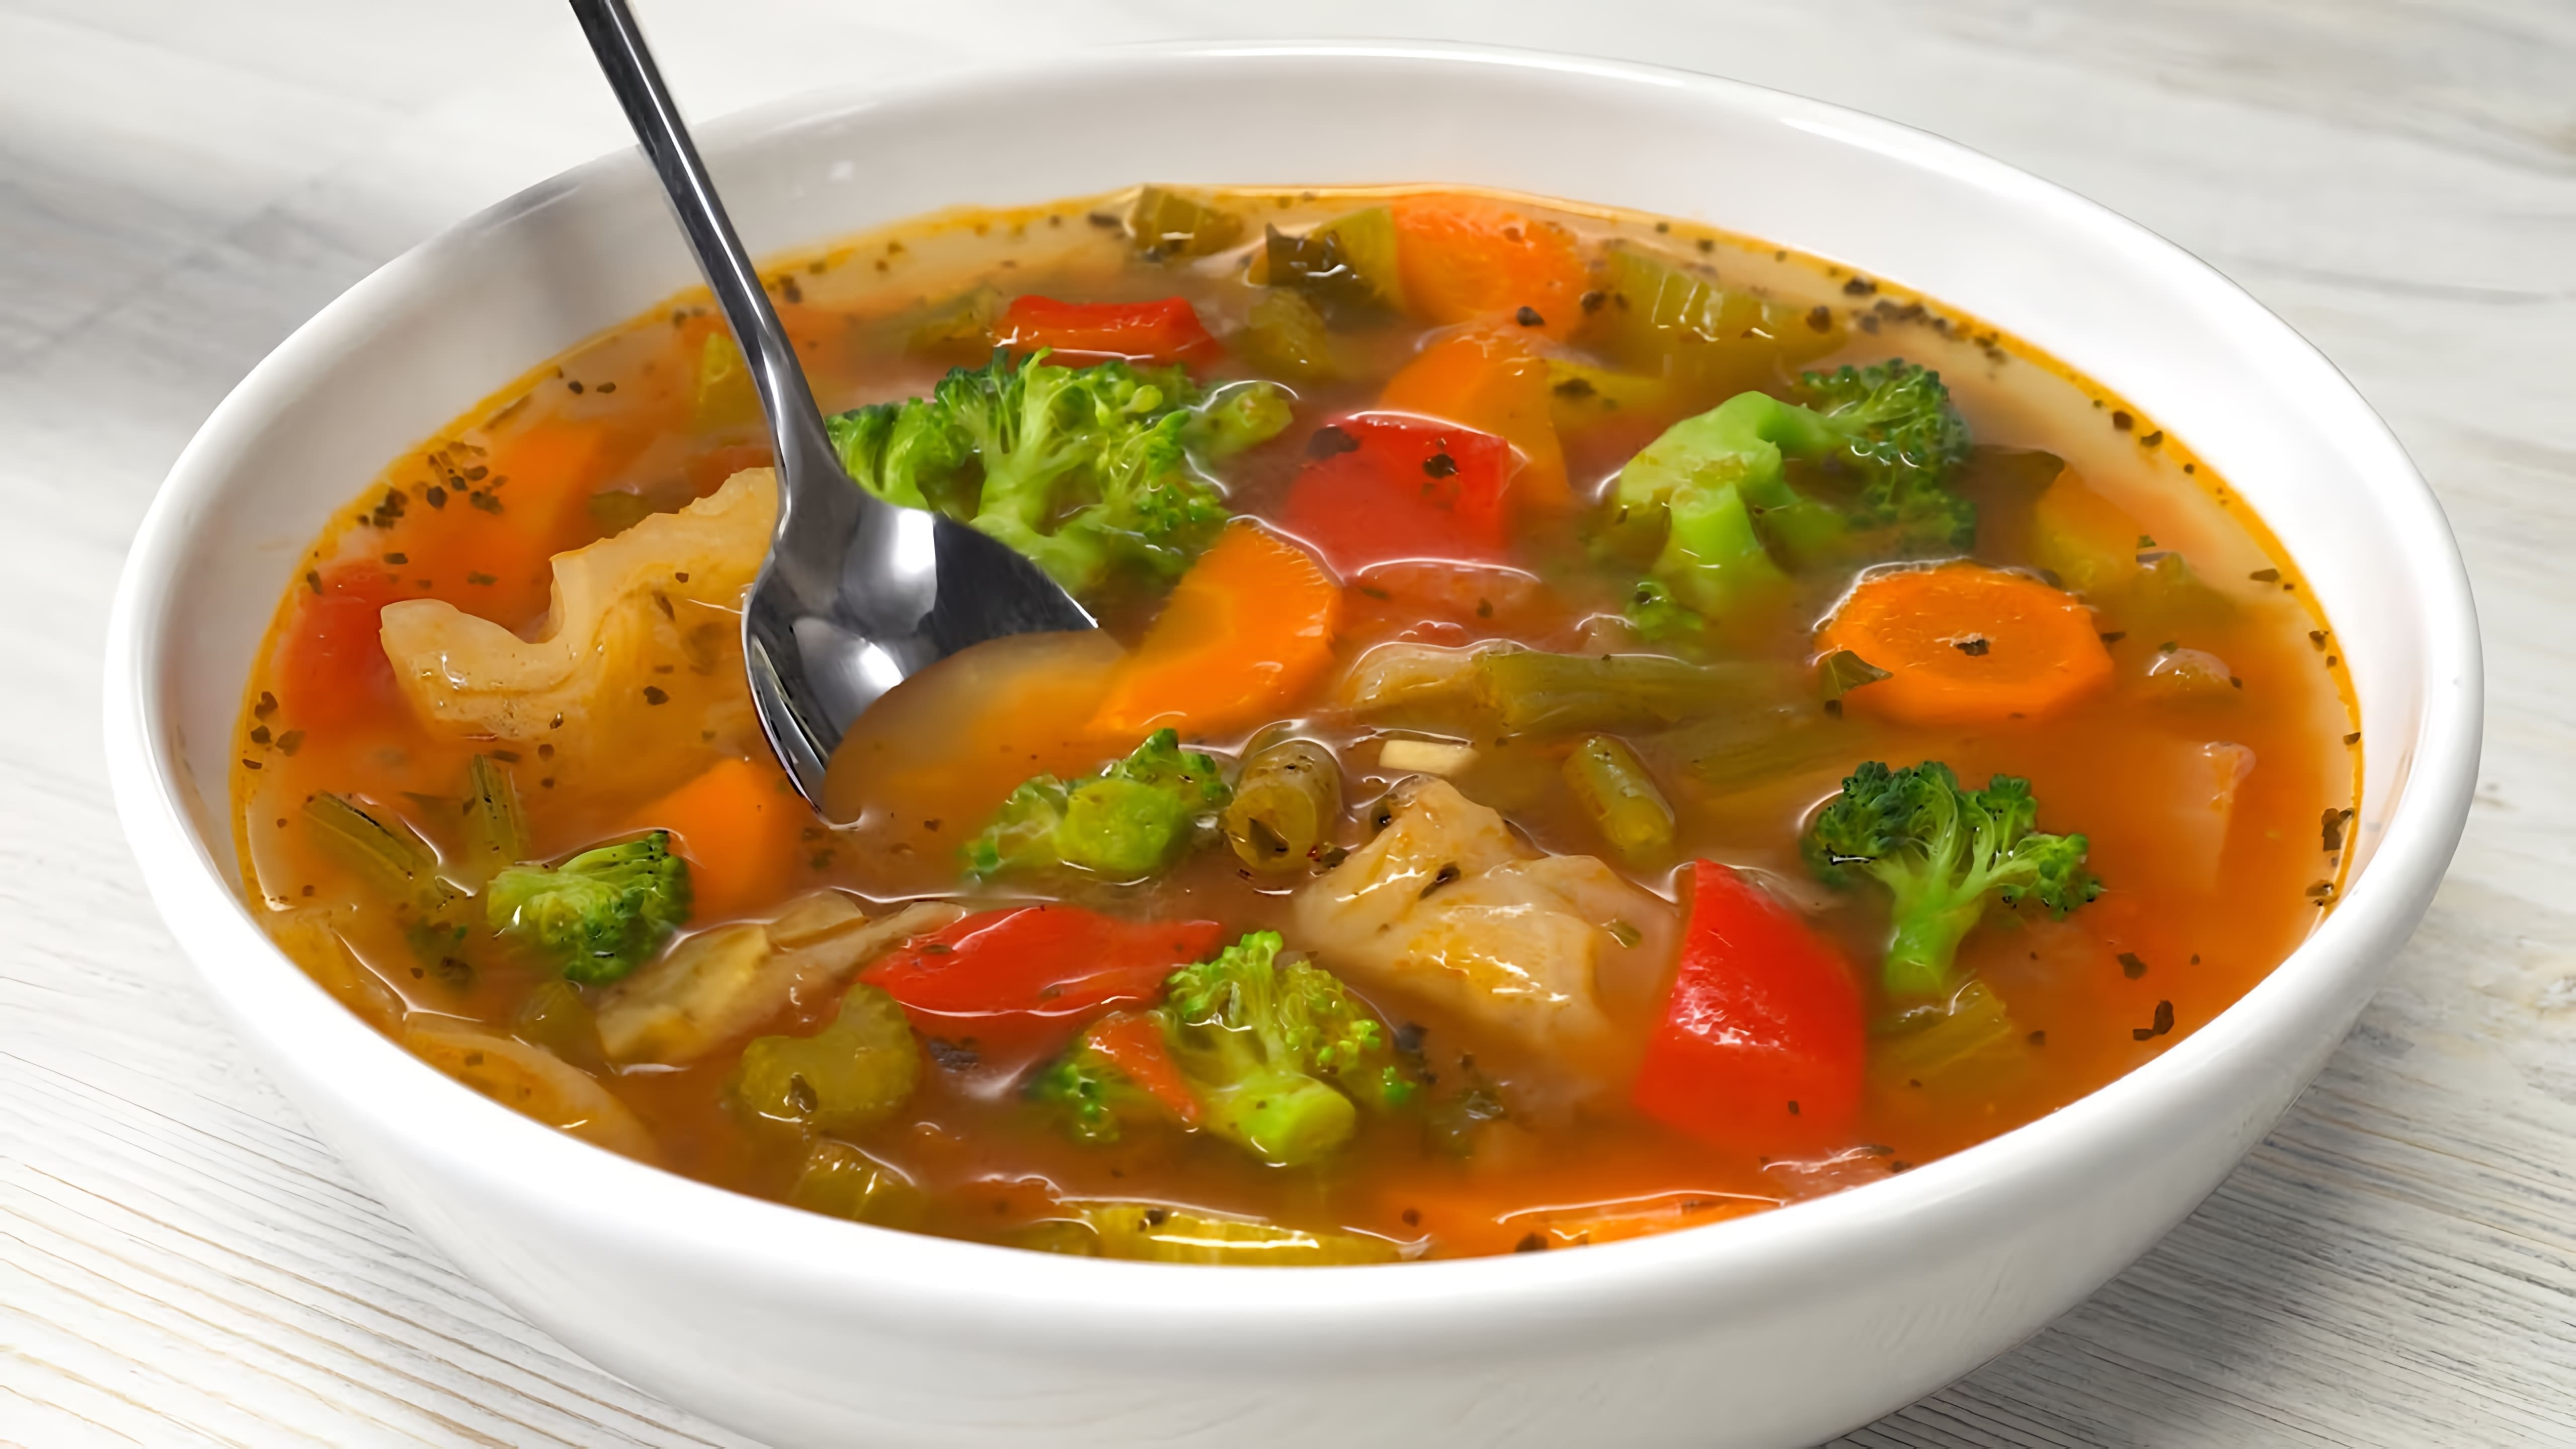 В этом видео демонстрируется рецепт овощного супа для похудения